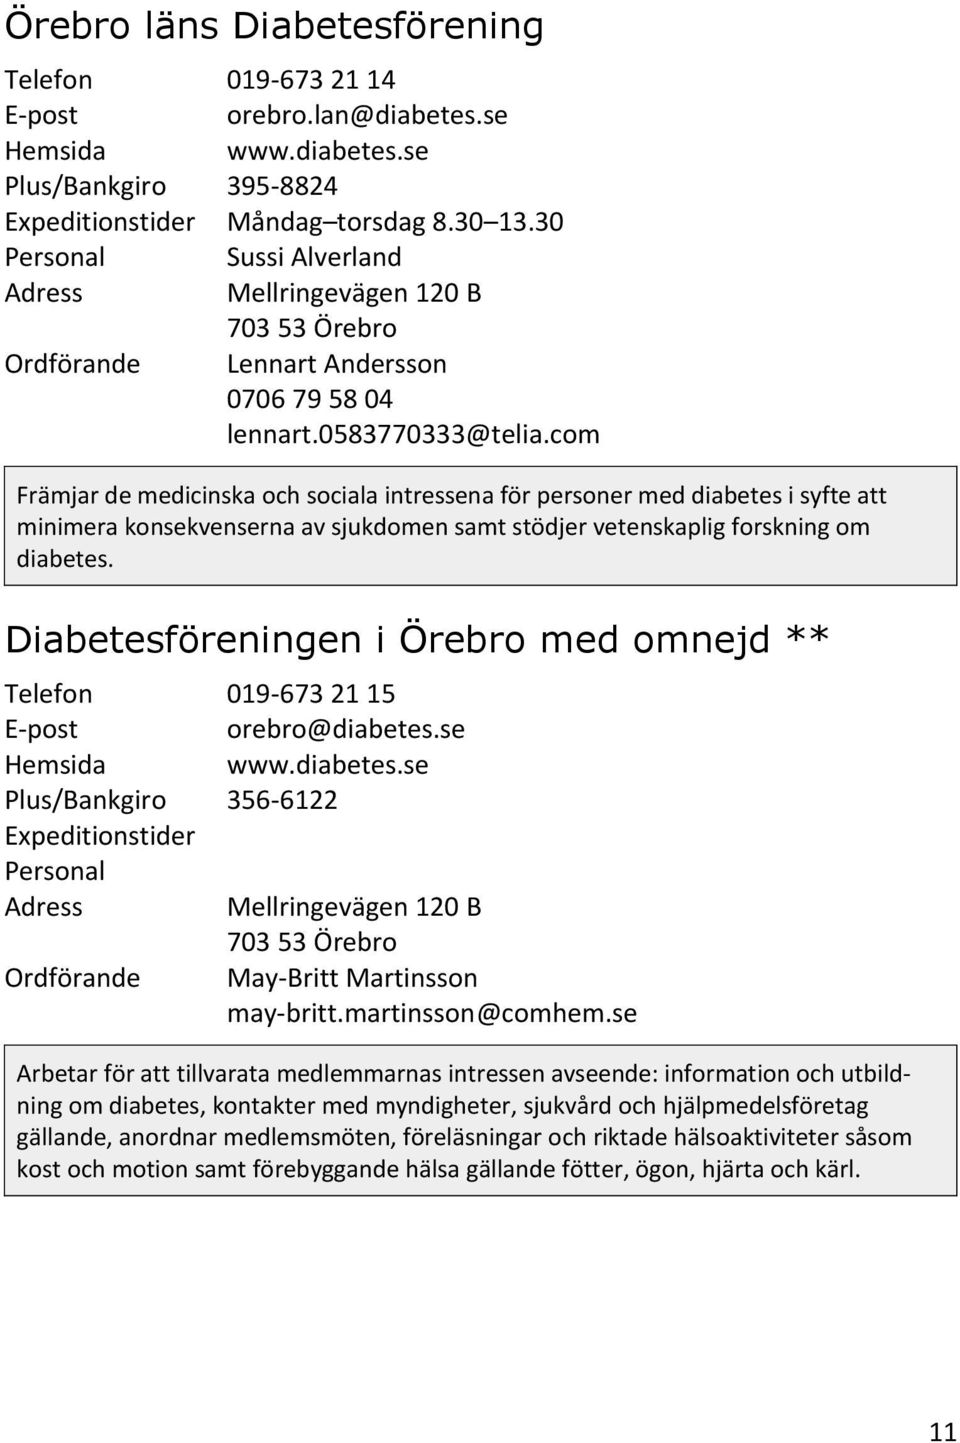 Diabetesföreningen i Örebro med omnejd ** 019-673 21 15 orebro@diabetes.se www.diabetes.se 356-6122 May-Britt Martinsson may-britt.martinsson@comhem.